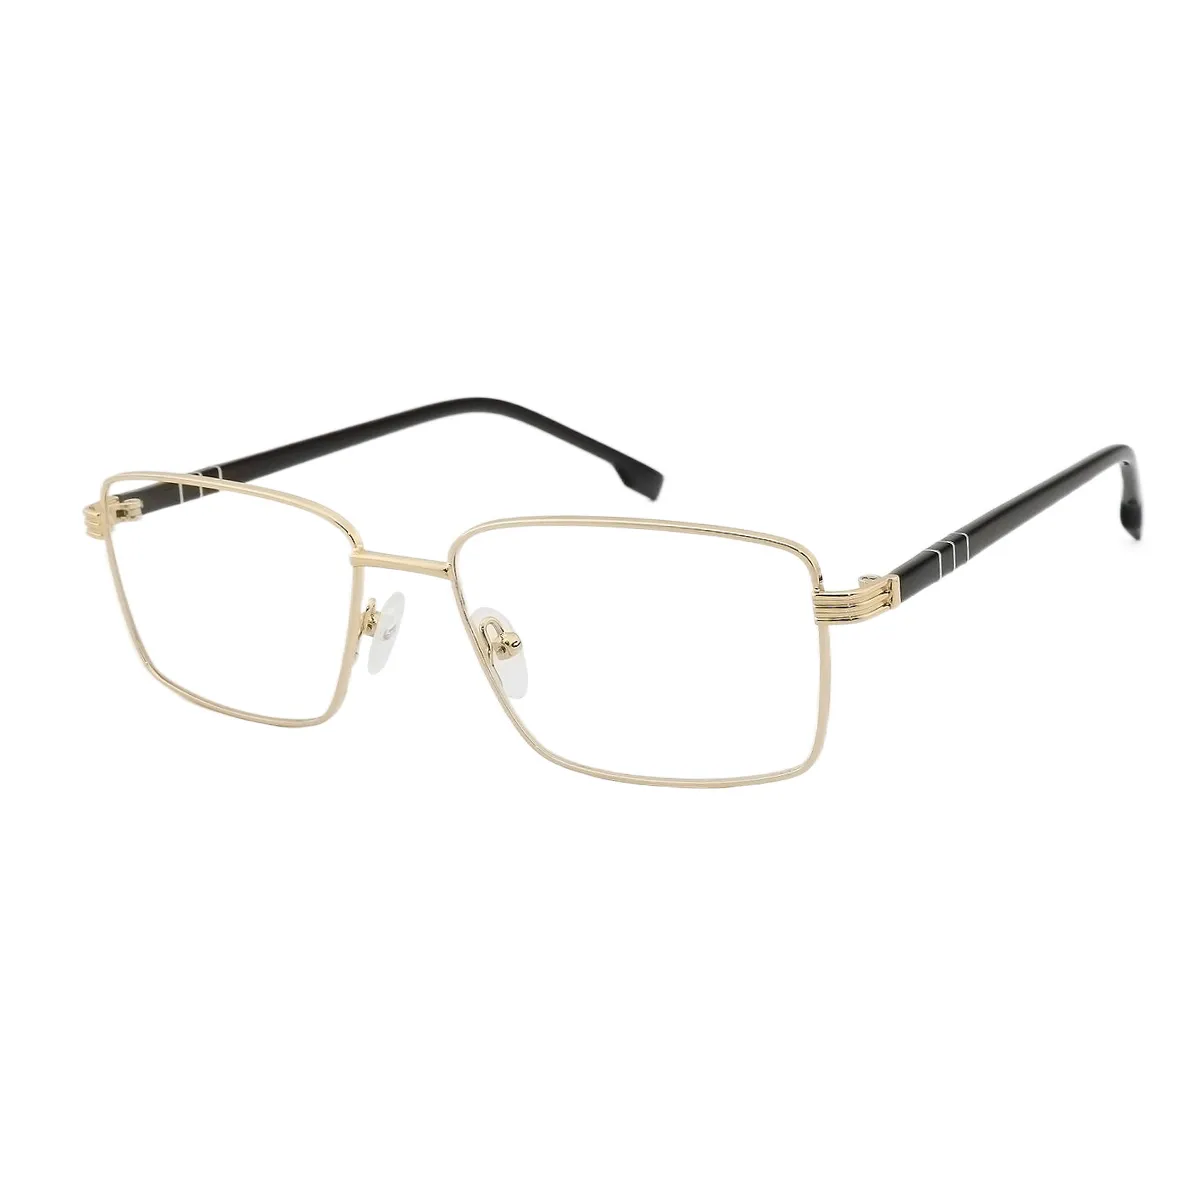 Alden - Square Gold Glasses for Men